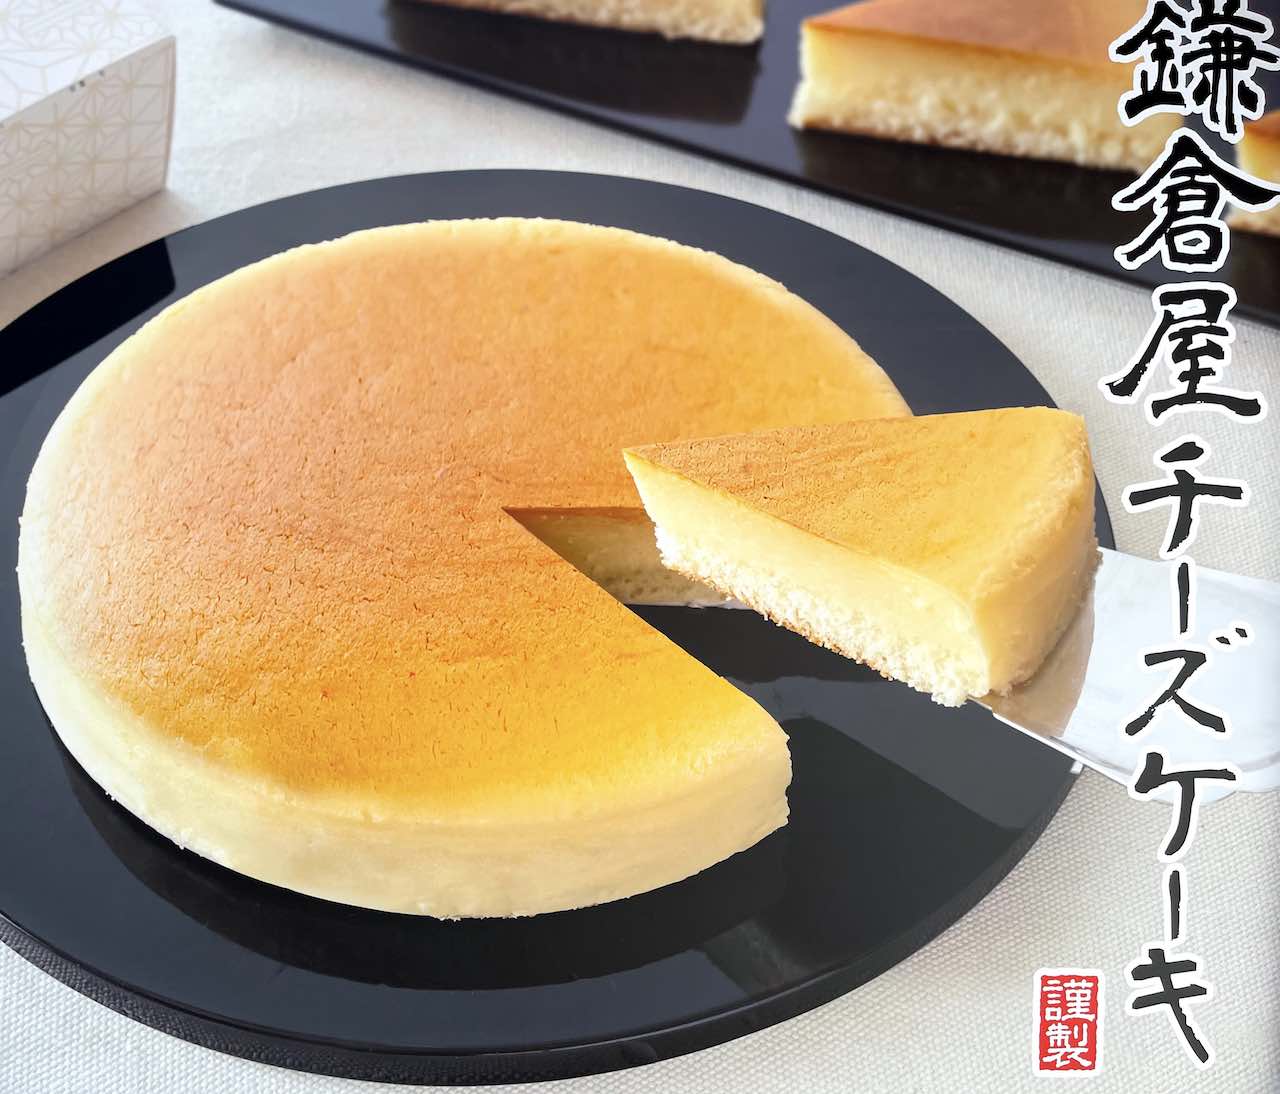 鎌倉屋チーズケーキ